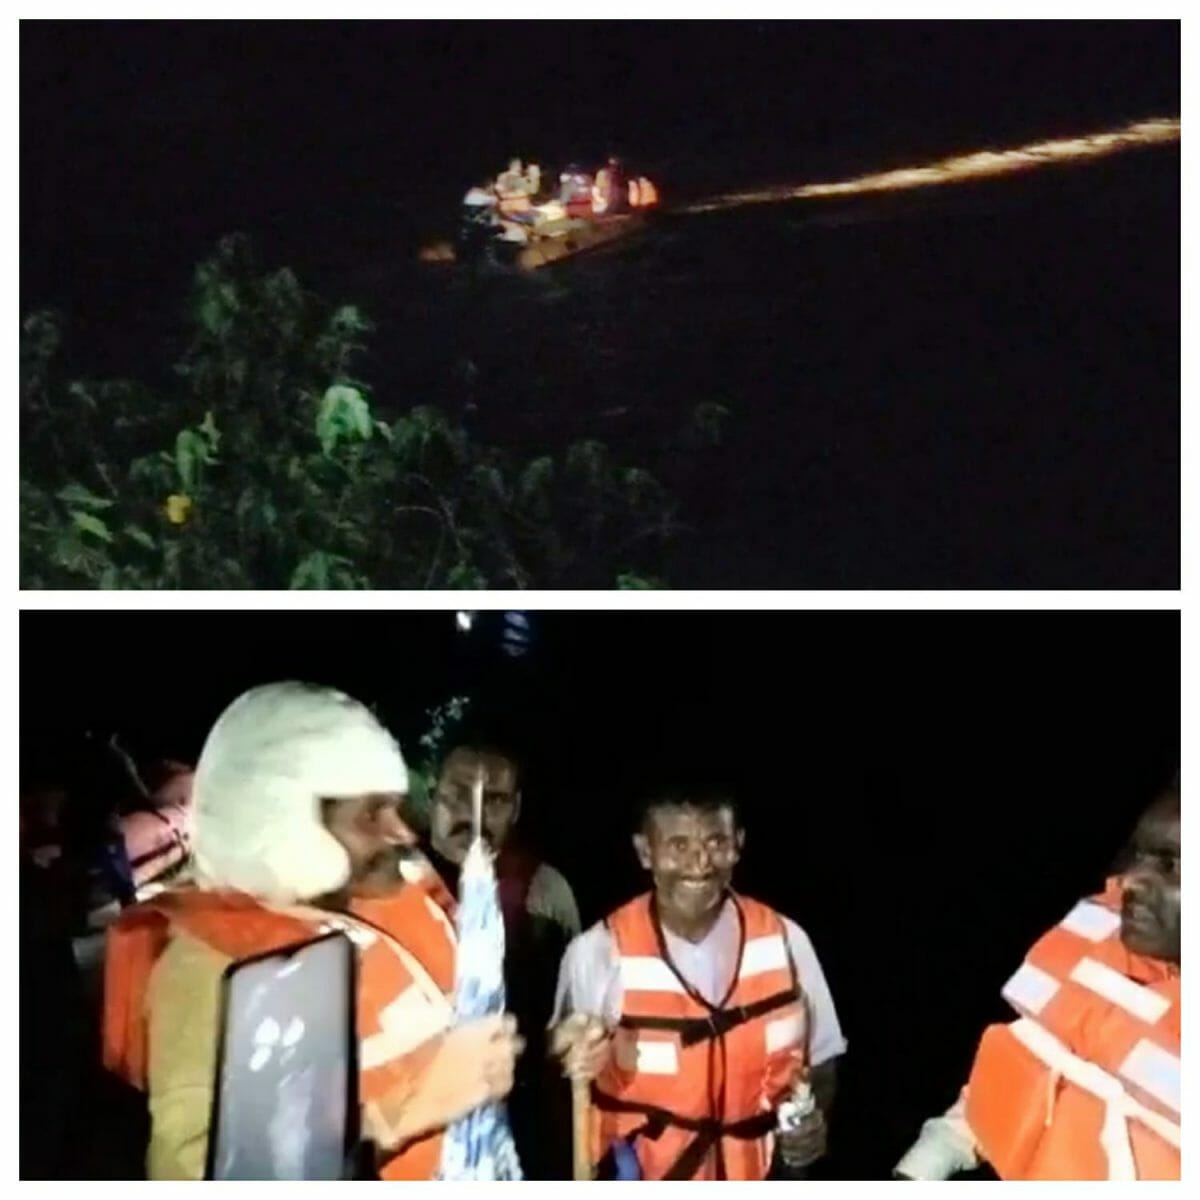 राजगढ़- नदी का जलस्तर बढ़ने से टापू पर फंसे 2 ग्रामीण, होमगार्ड टीम ने अंधेरे में किया रेस्क्यू